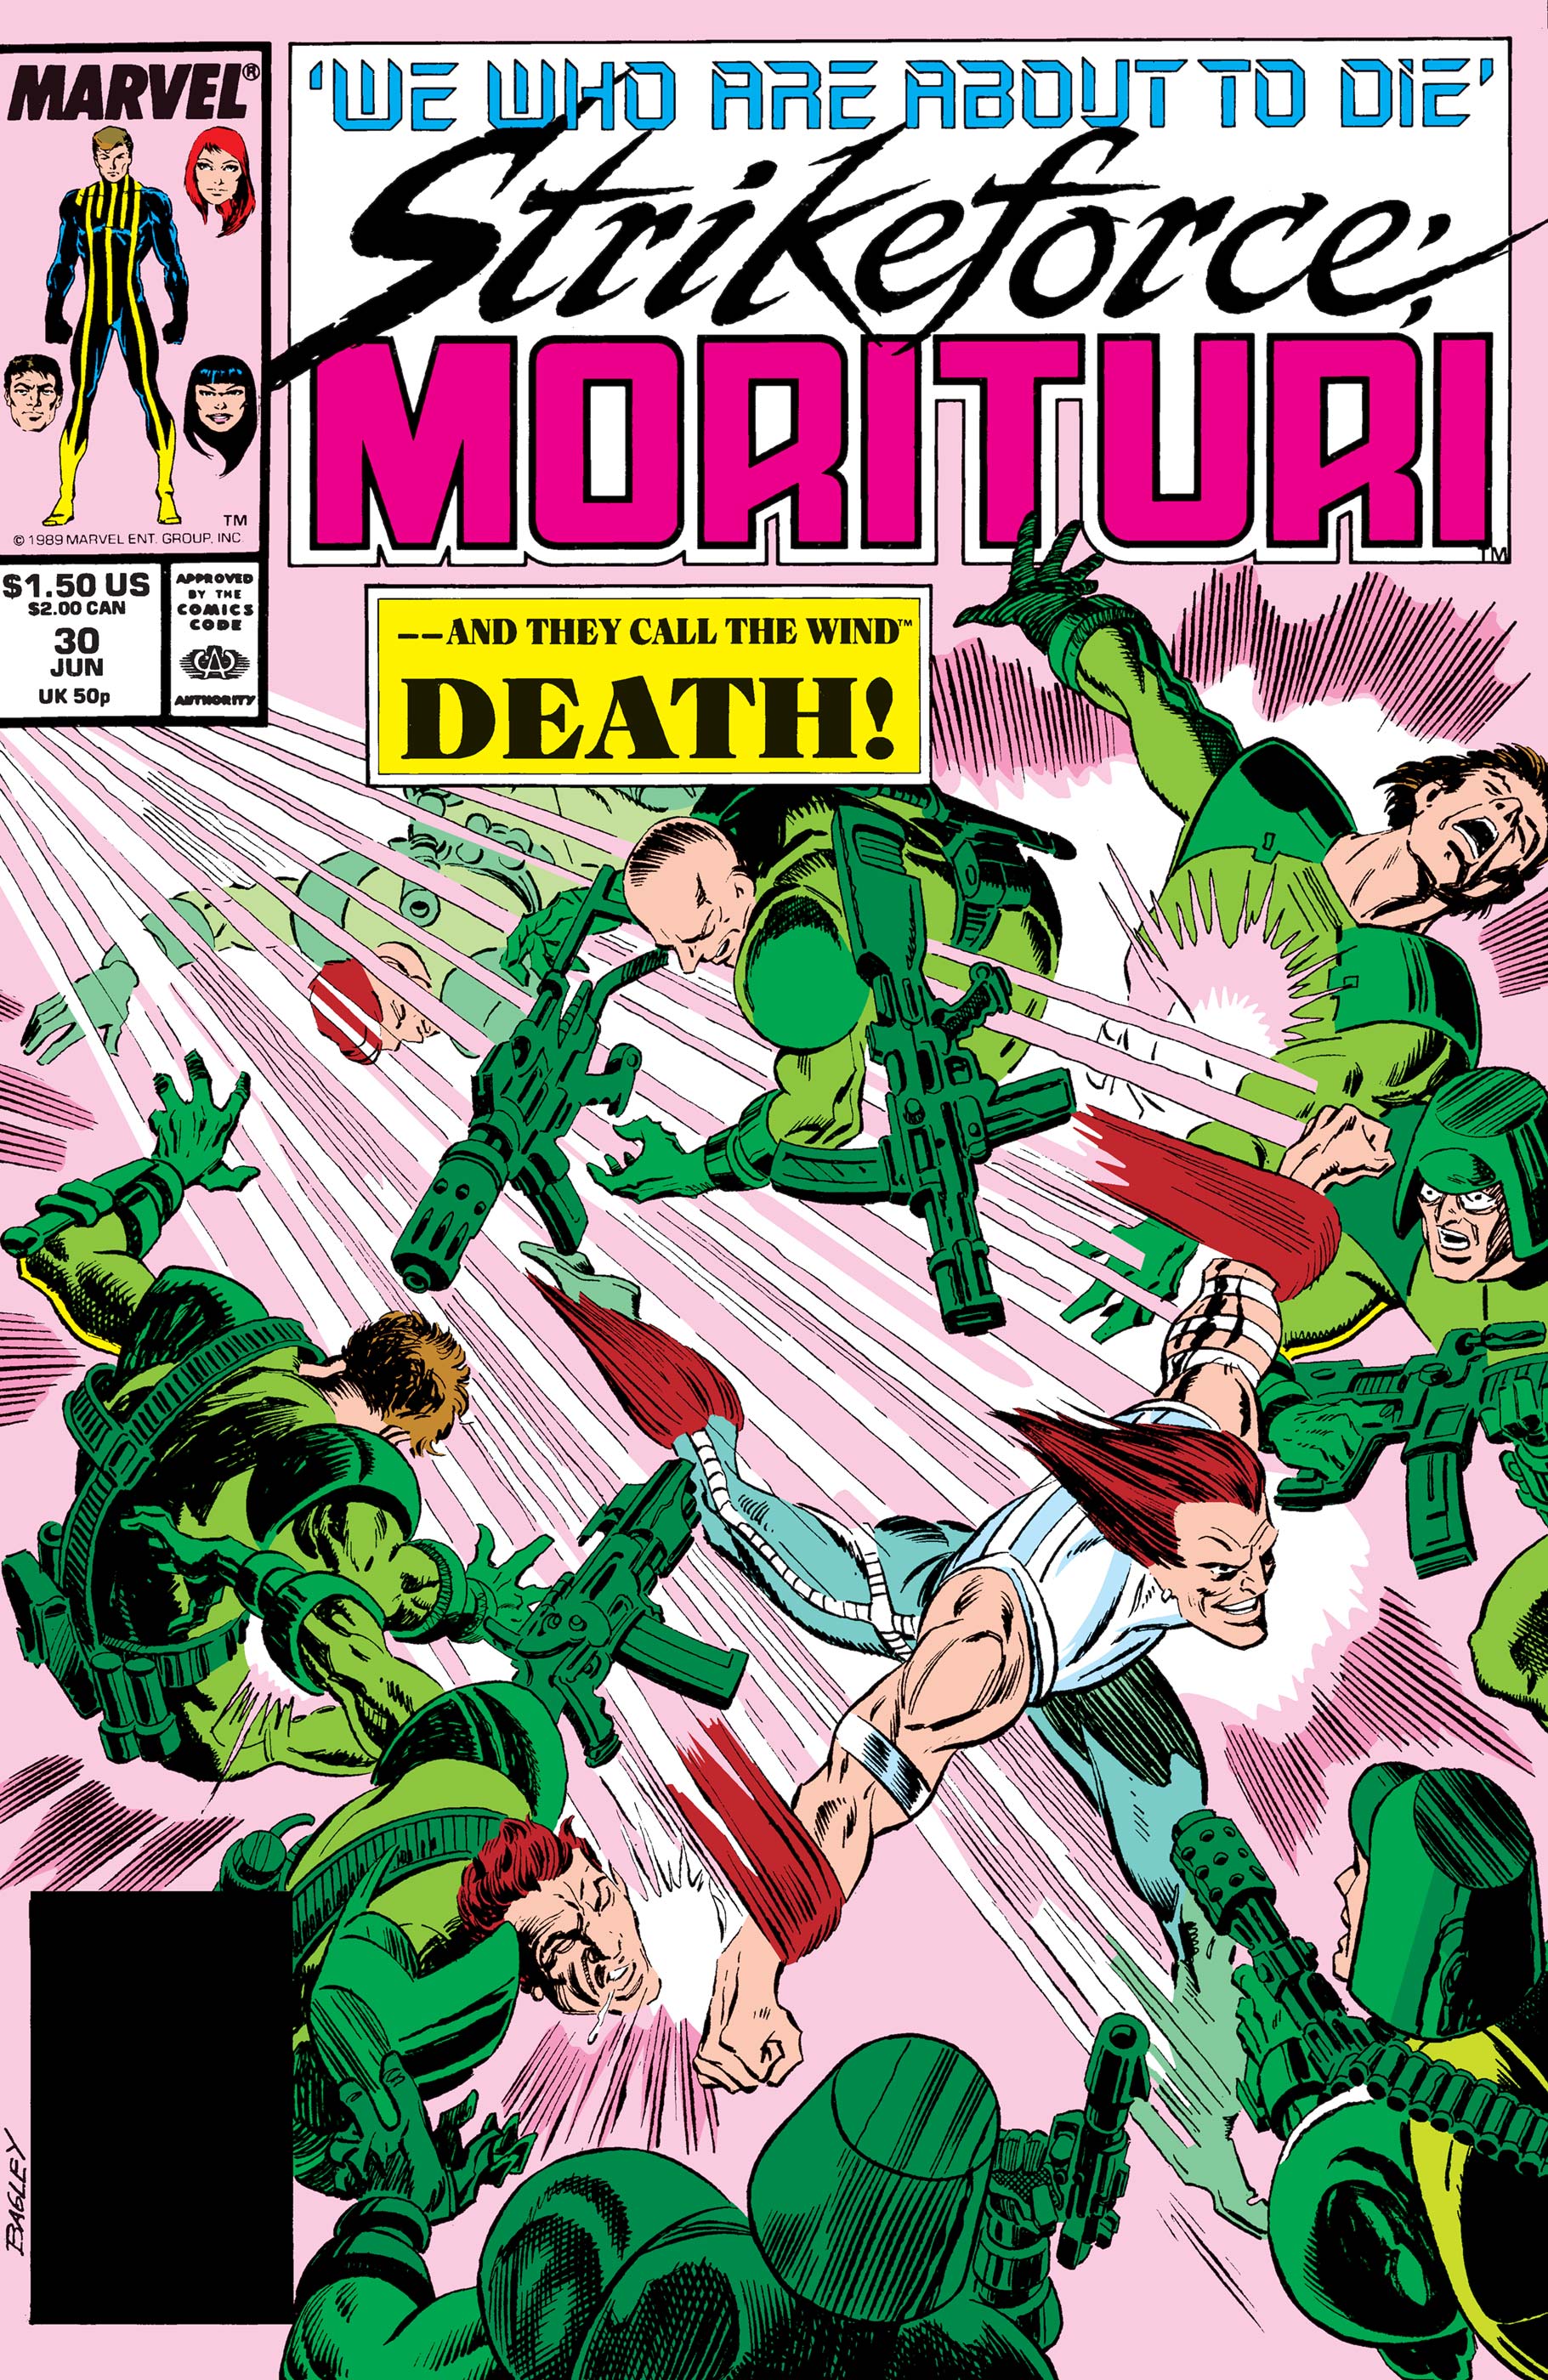 Strikeforce: Morituri (1986) #30